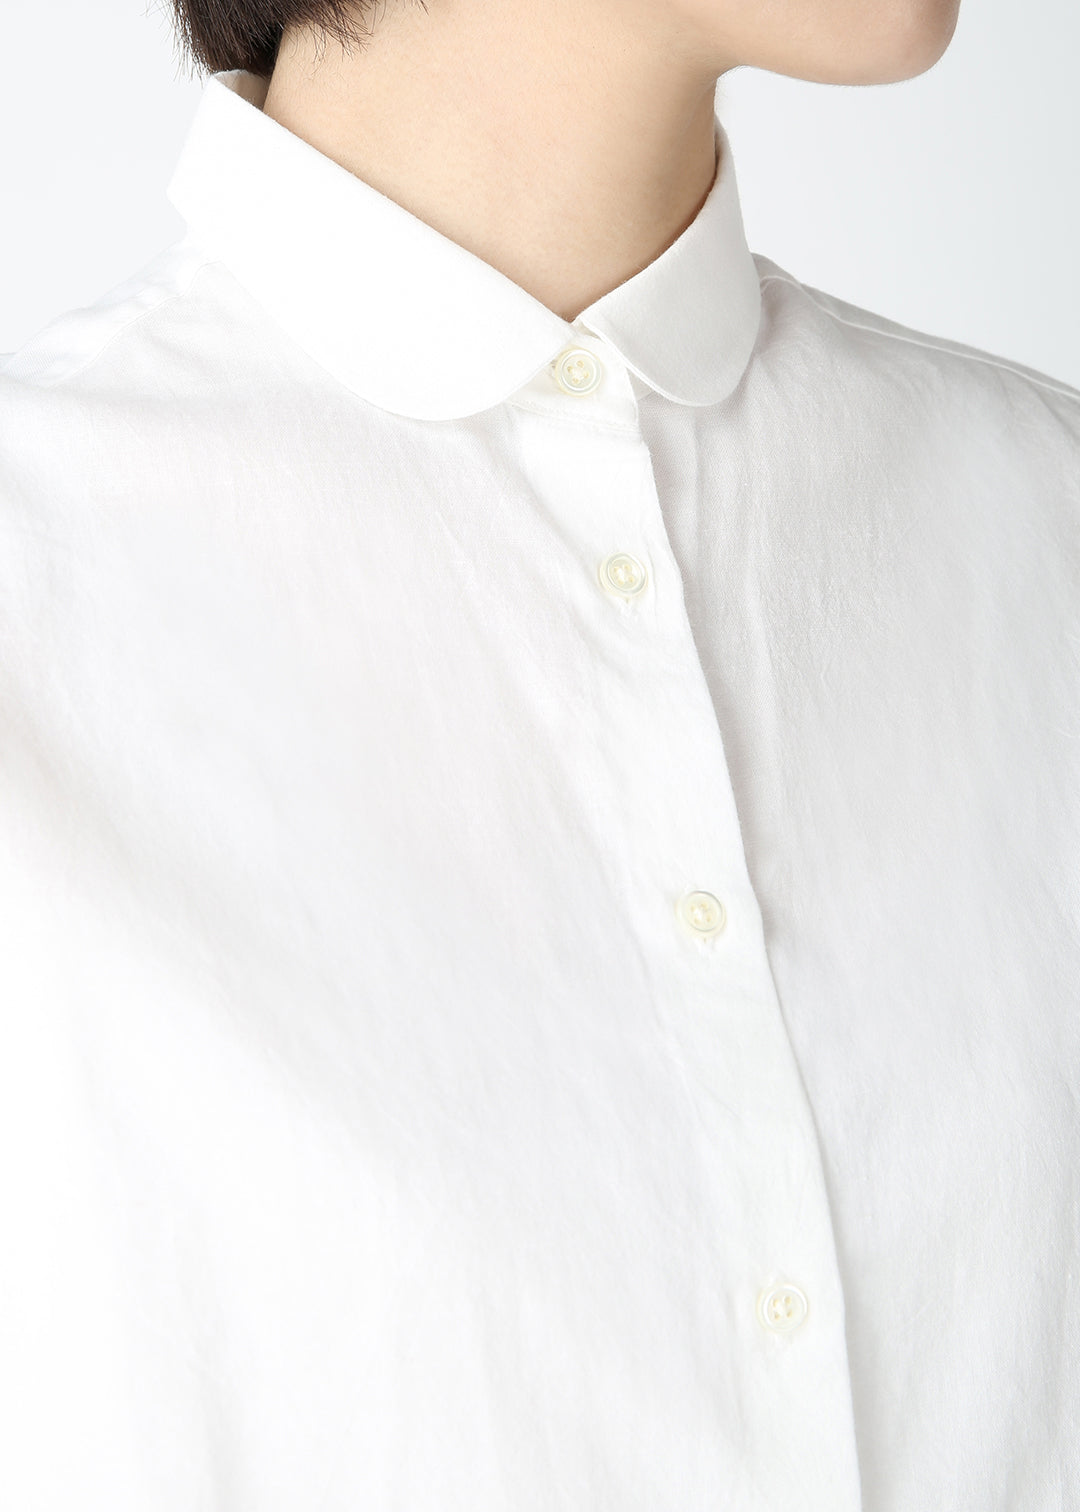 Khadi Short-SL Round Collar Shirt